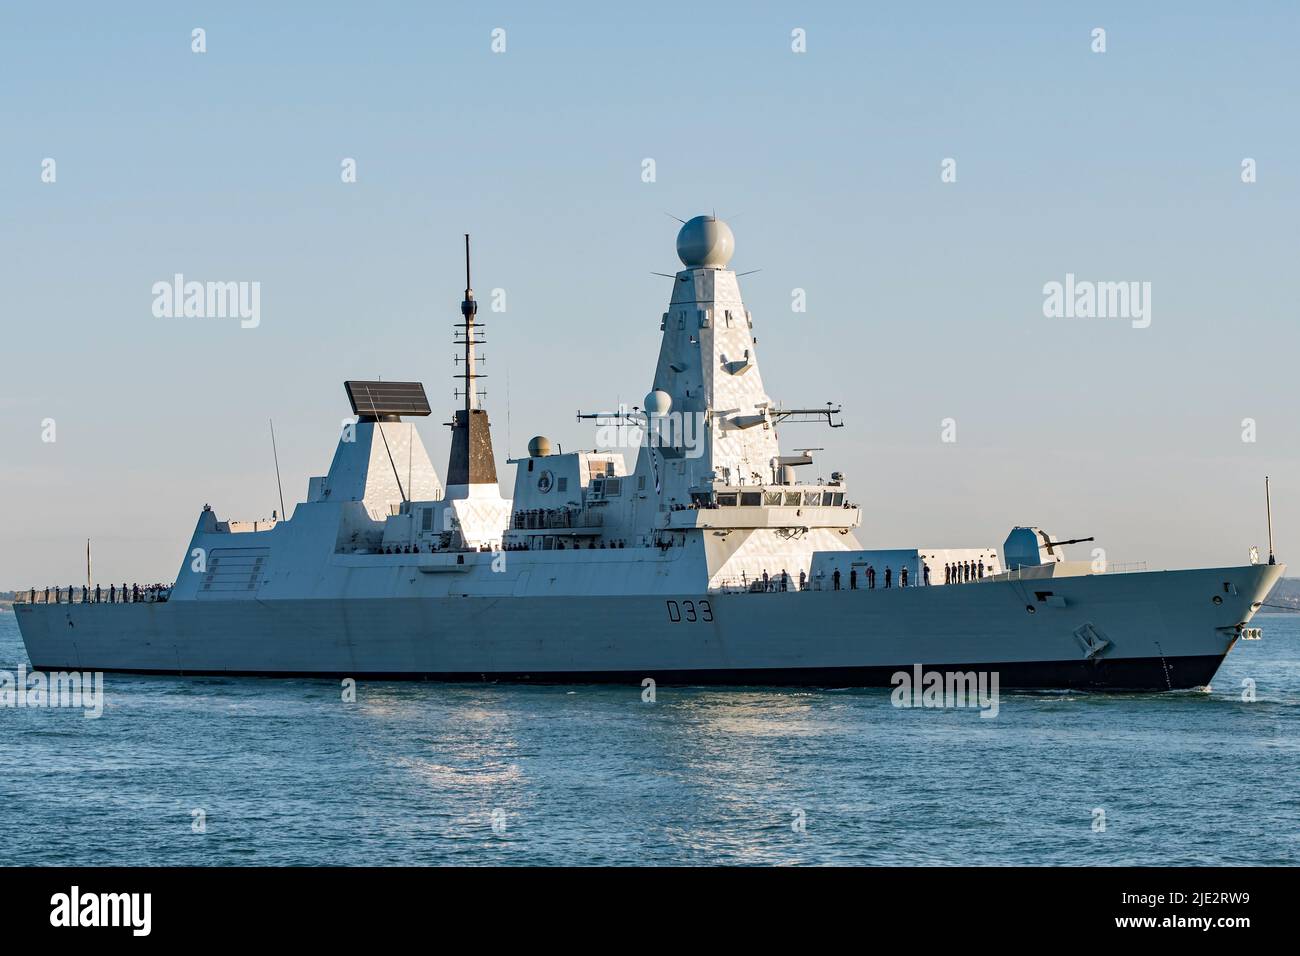 Der Luftverteidigungszerstörer HMS Dauntless (D33) der Royal Navy Typ 45 kehrte am 22/6/2022 nach einer Motorüberholung in Liverpool, Großbritannien, nach Portsmouth zurück. Stockfoto